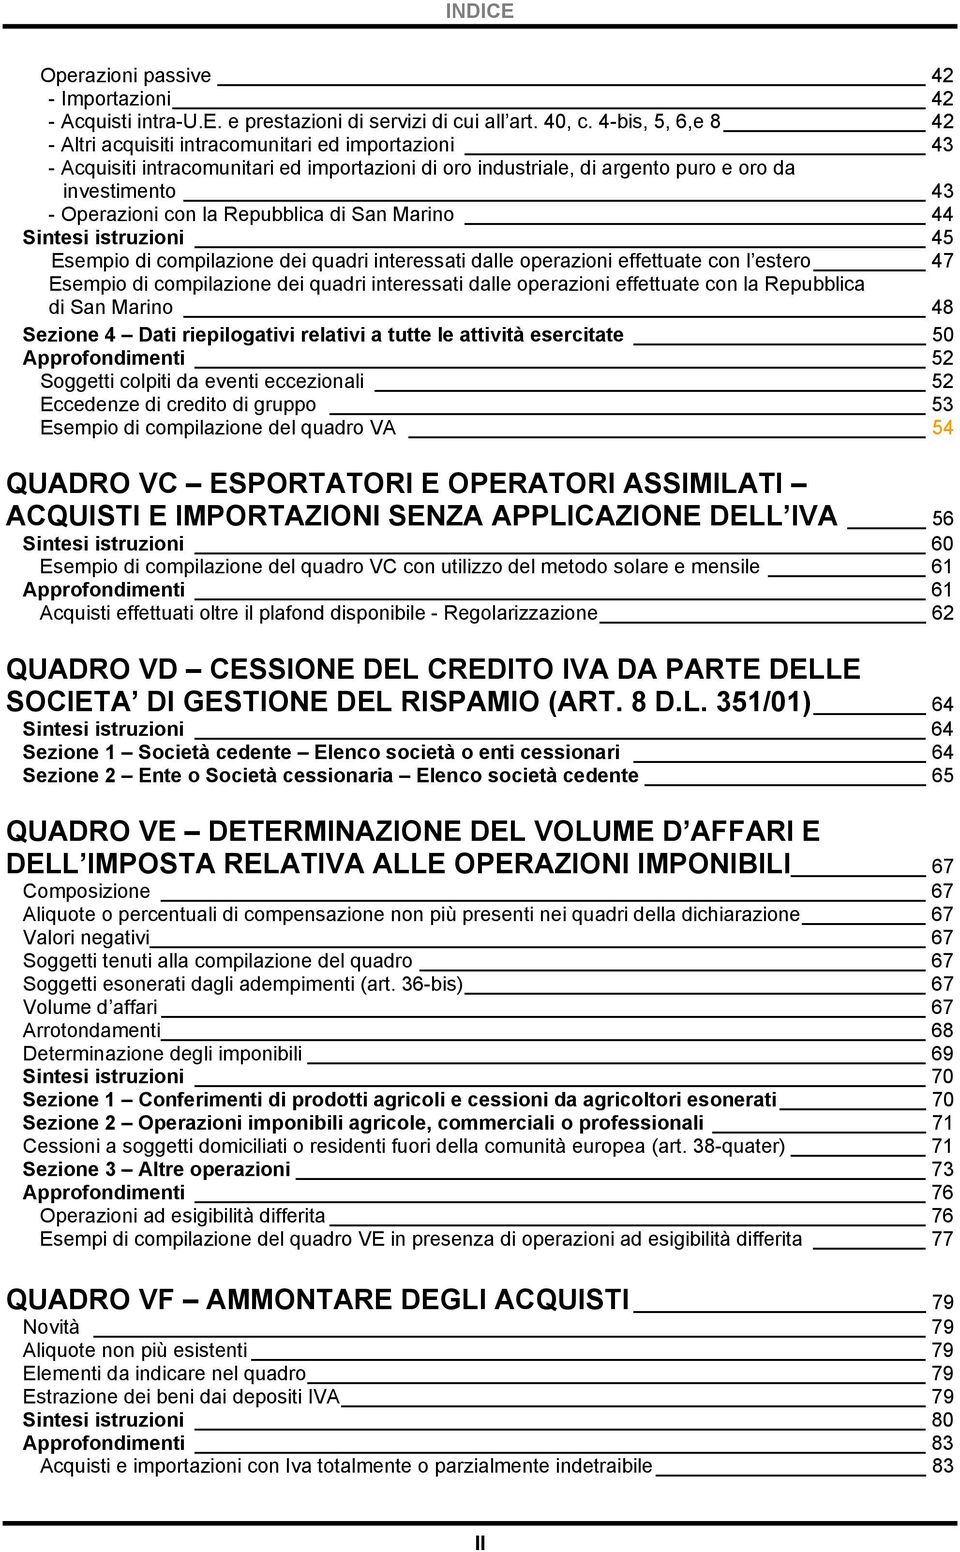 Repubblica di San Marino 44 Sintesi istruzioni 45 Esempio di compilazione dei quadri interessati dalle operazioni effettuate con l estero 47 Esempio di compilazione dei quadri interessati dalle